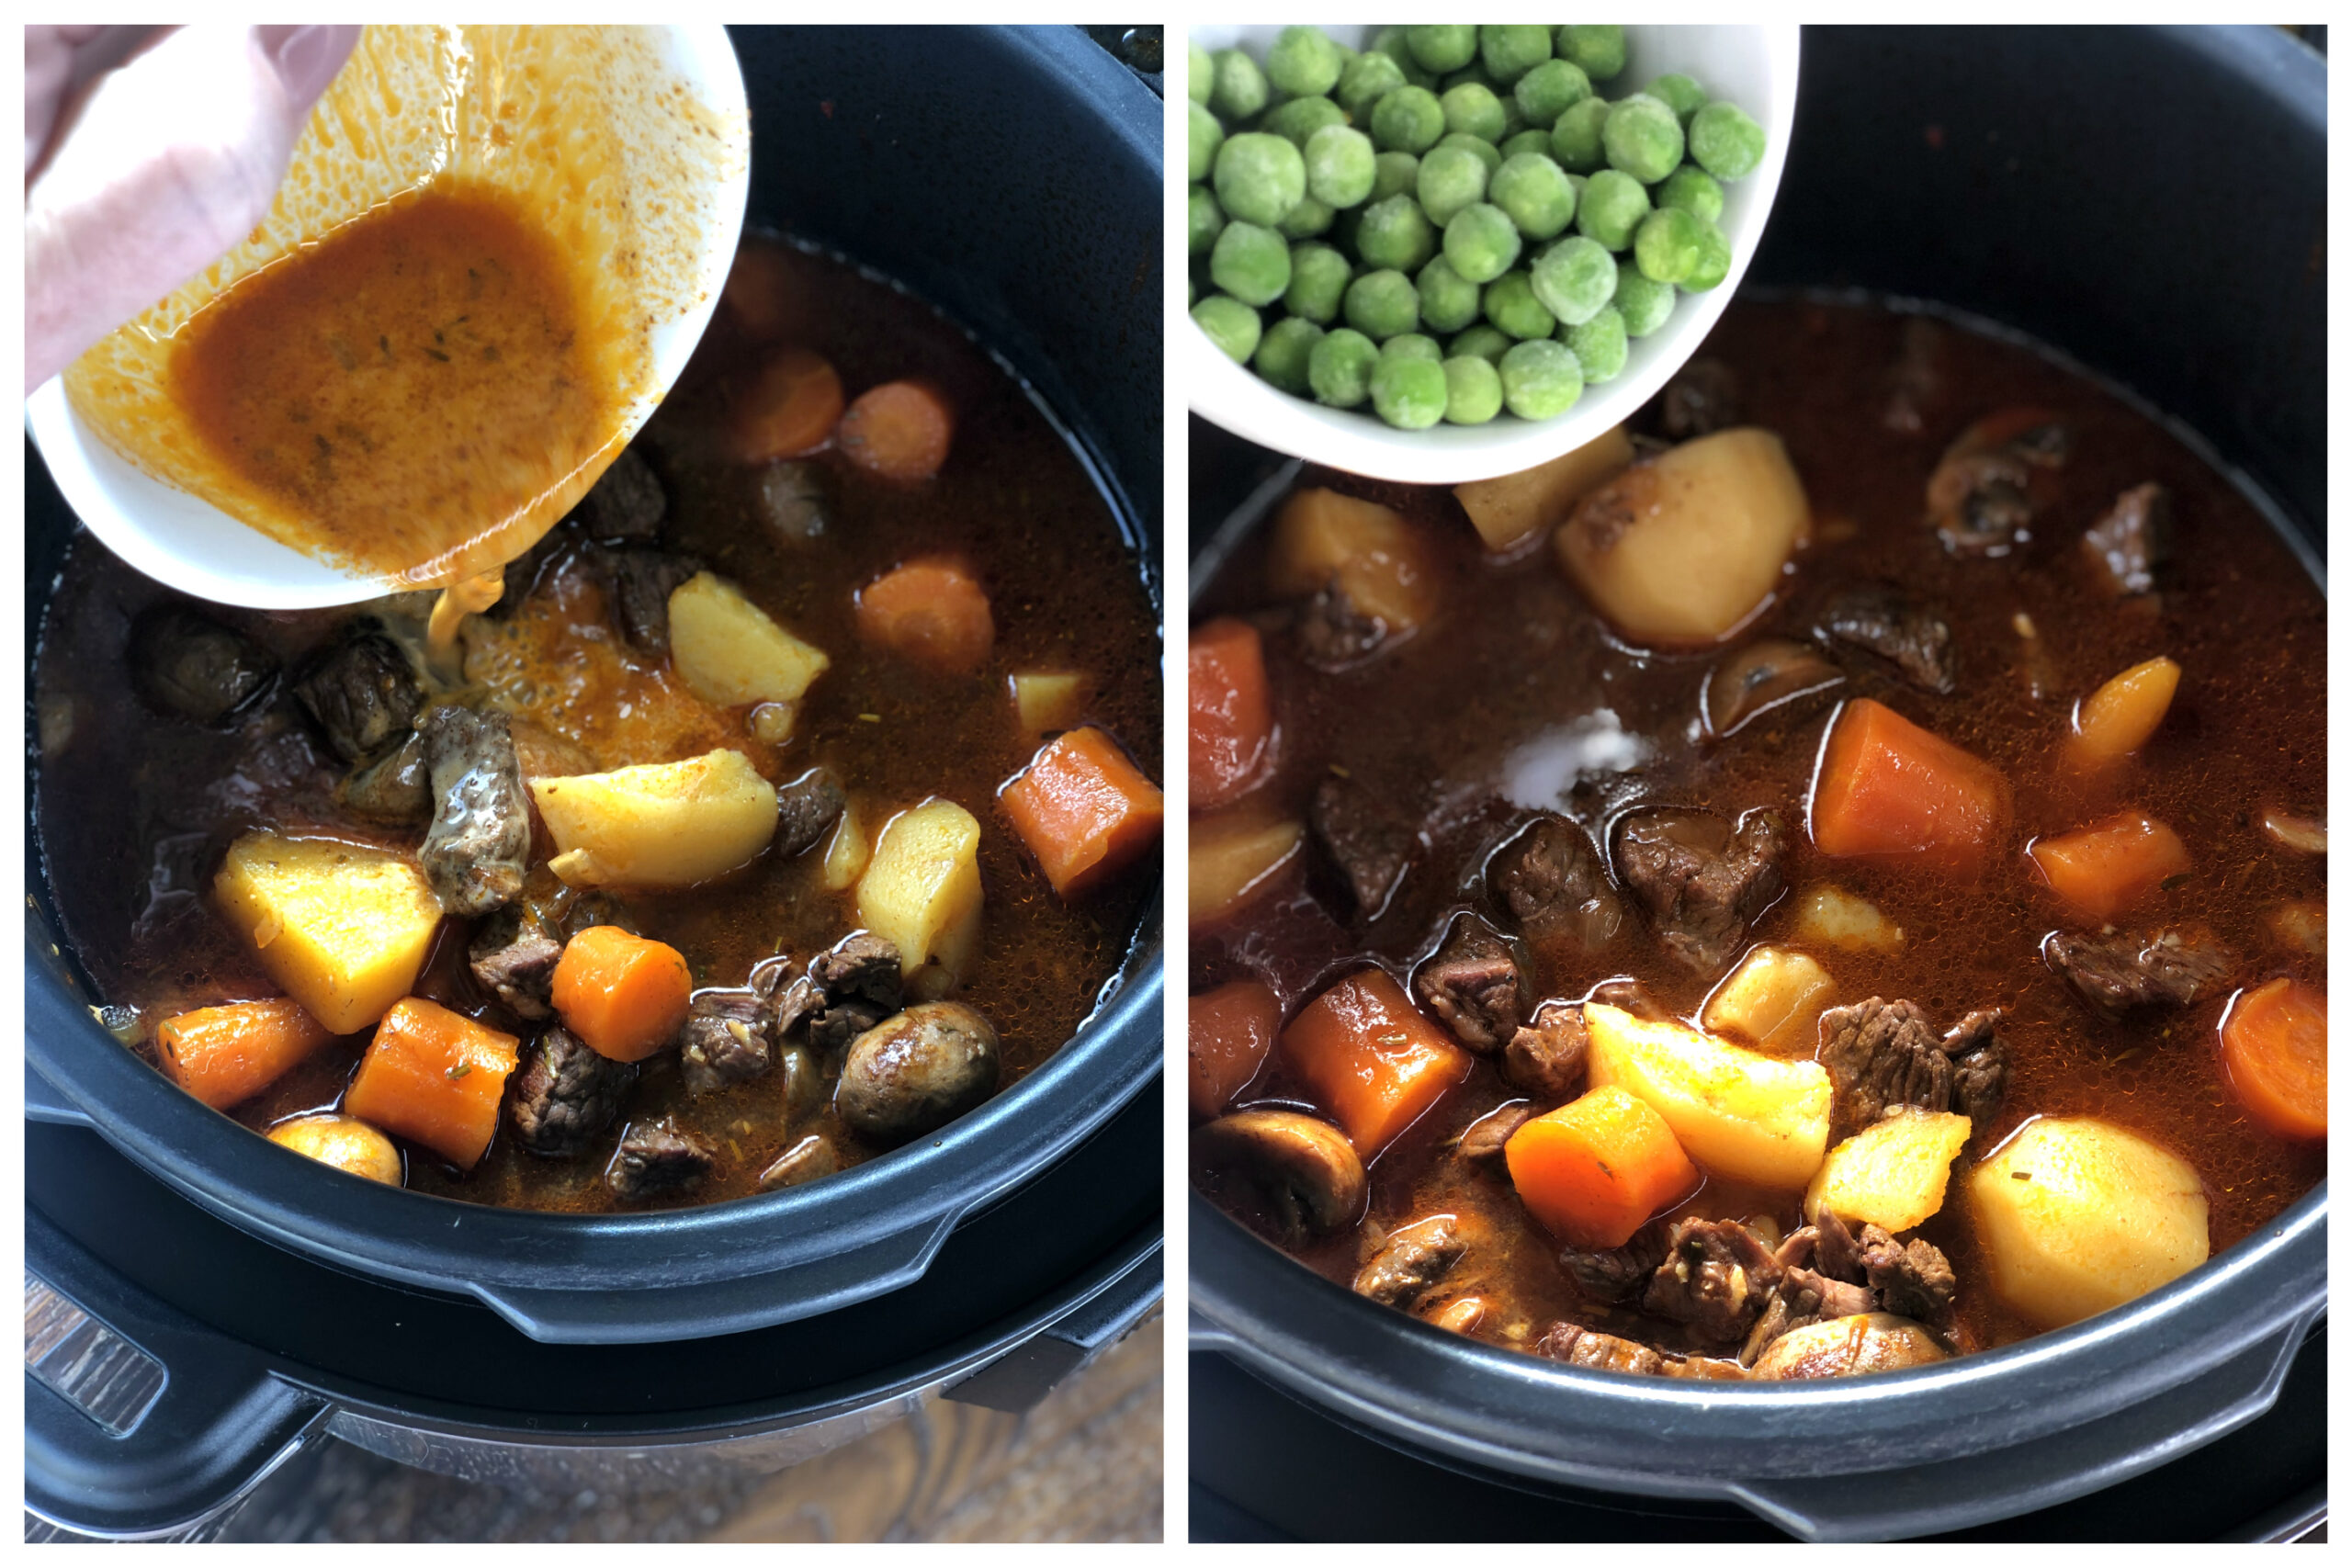 Cornflour Slurry and Peas to thicken stew